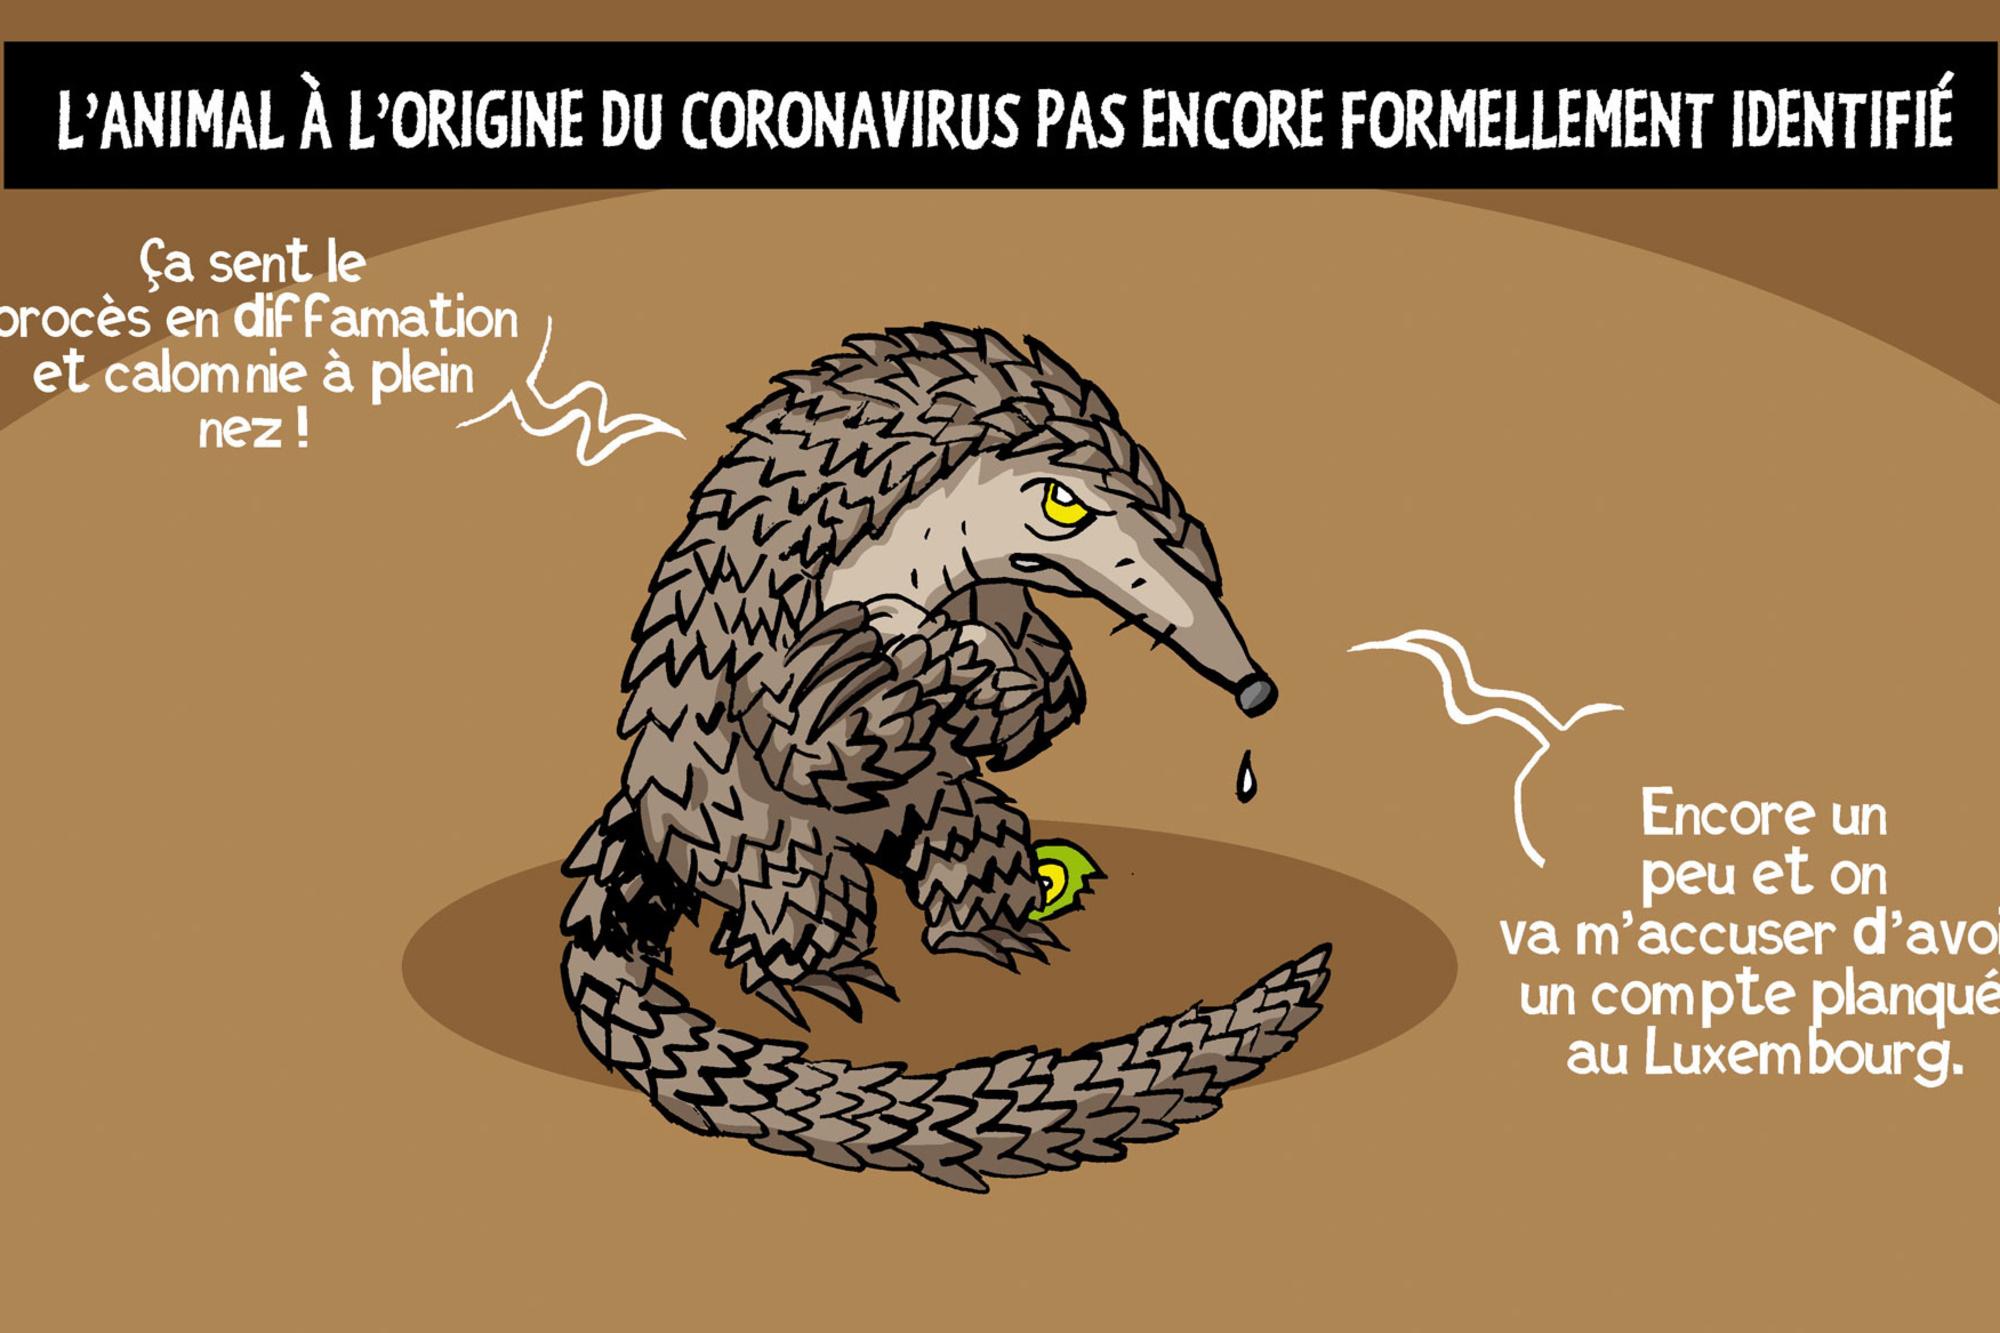 Pour l'OMS, le pangolin n'est pas forcément à l'origine du coronavirus.